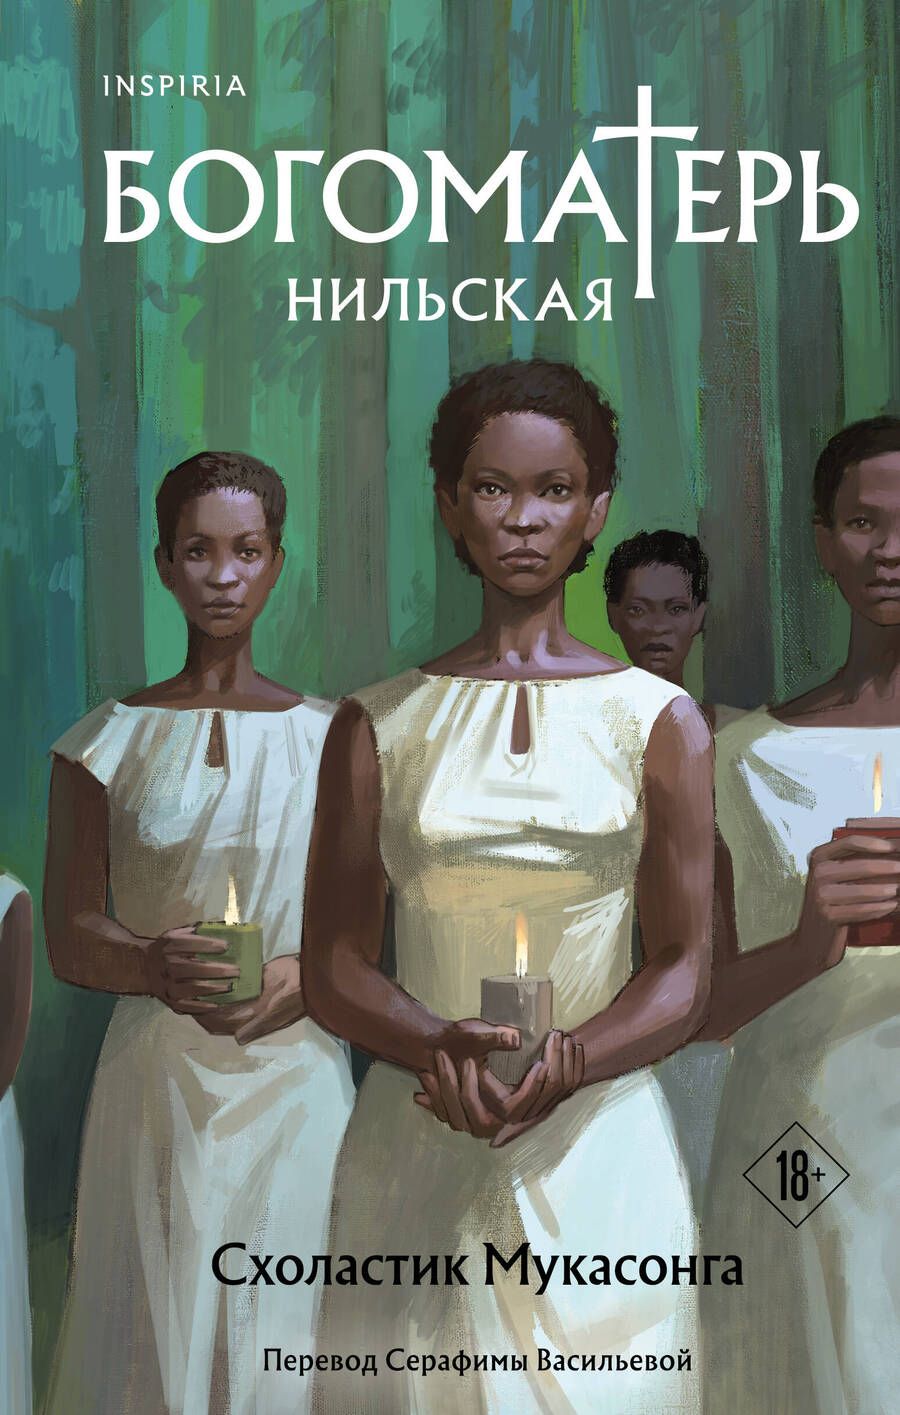 Обложка книги "Мукасонга: Богоматерь Нильская"